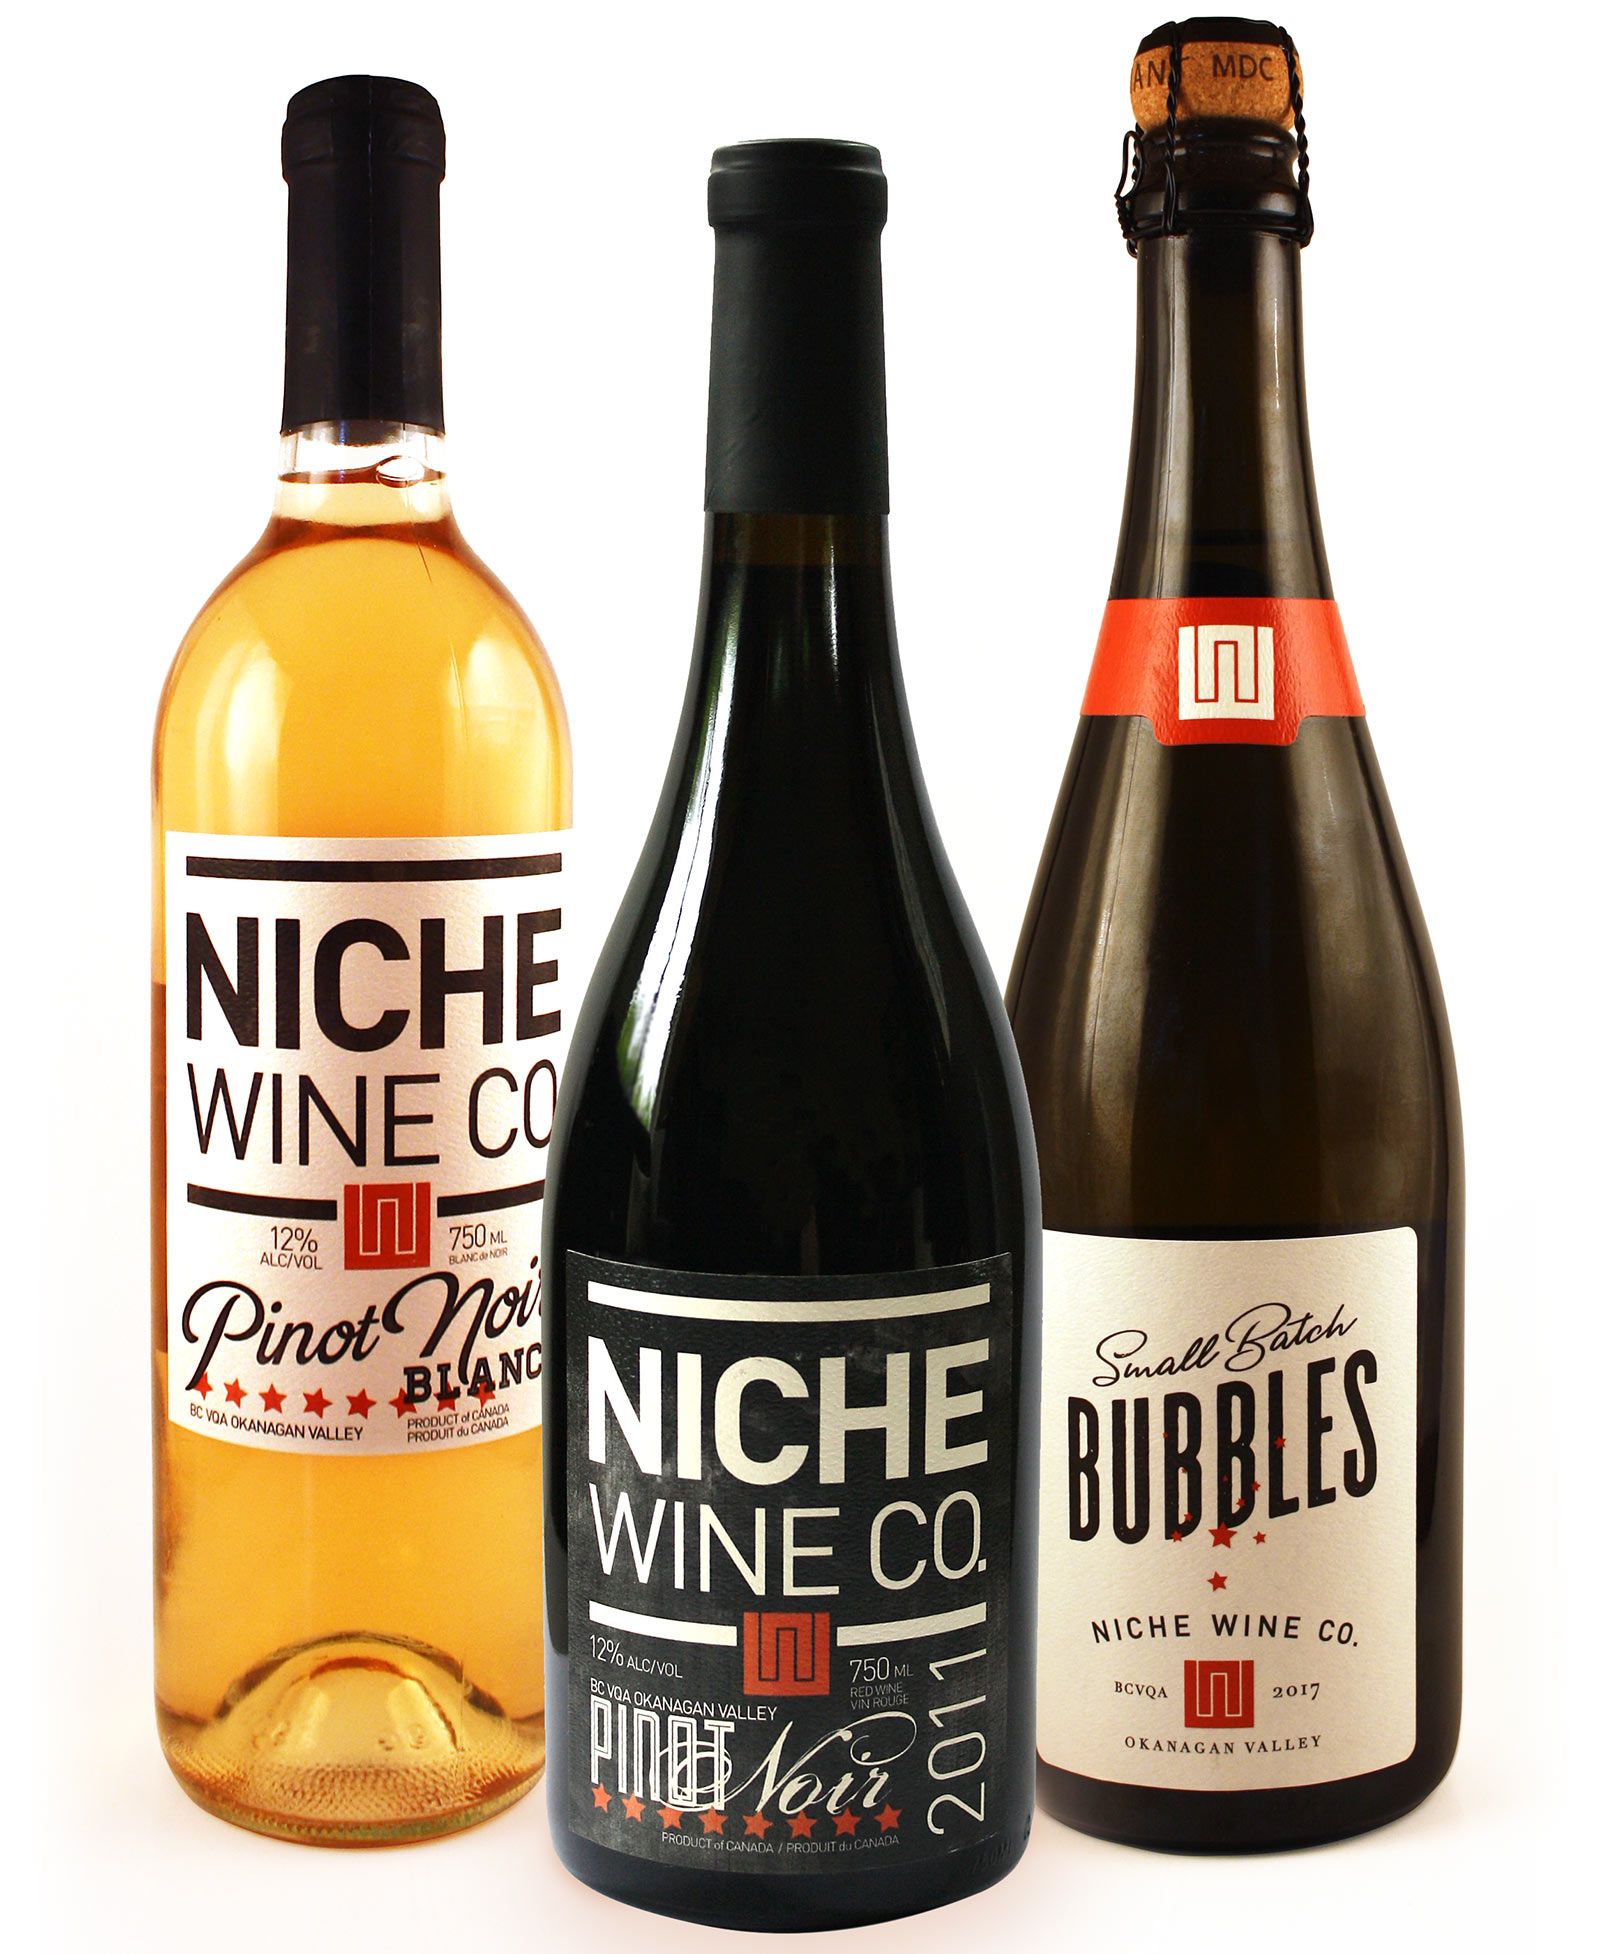 Niche_wine_co_bottles.jpg